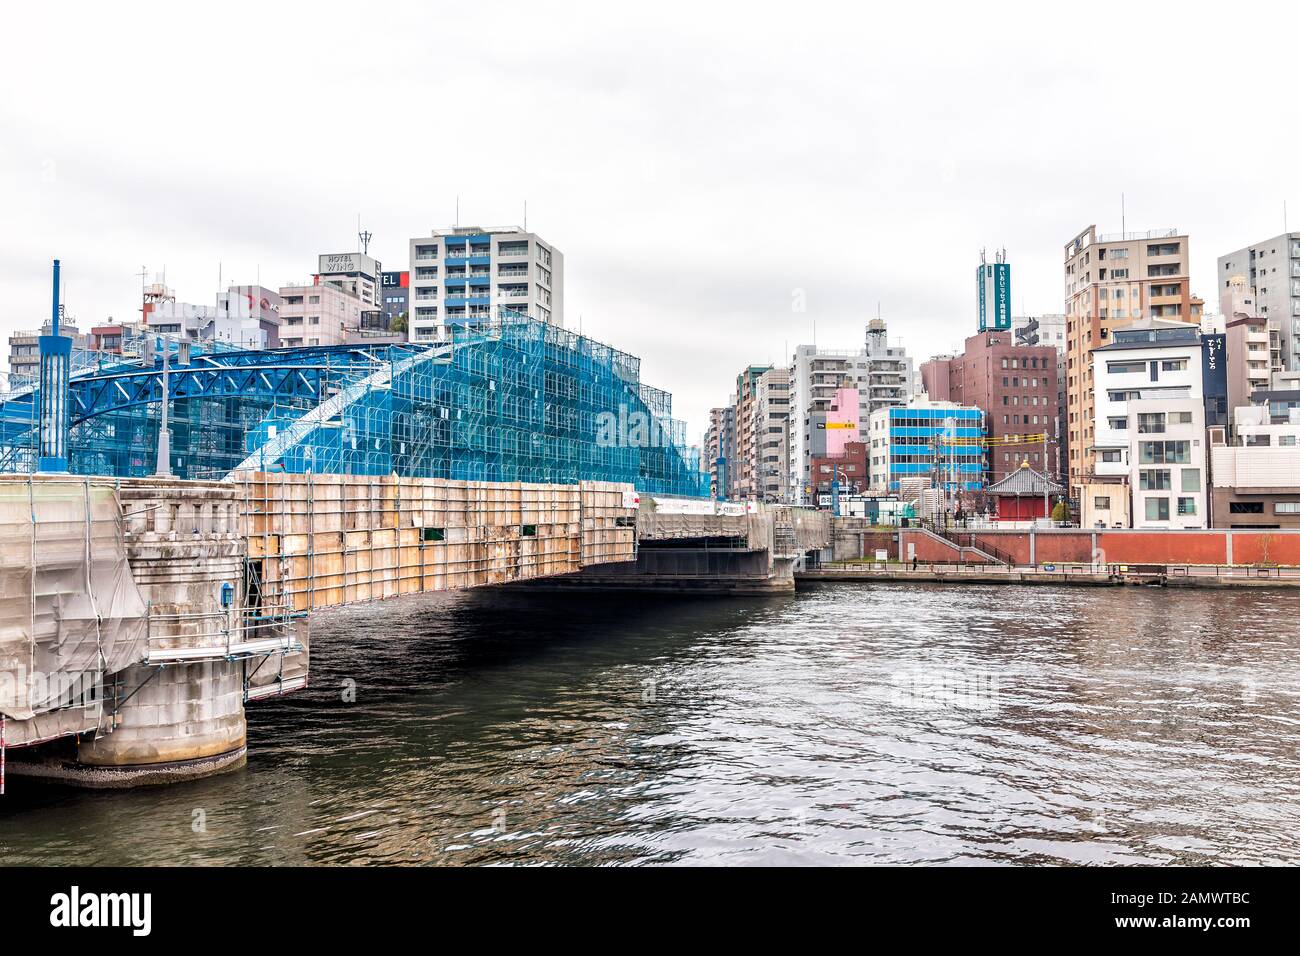 Tokio, Japan - 30. März 2019: SUMIDA Asakusa Bezirk Stadtbild Skyline und blauer Brückenfluss in der Innenstadt an trübem Tag mit Schildern Stockfoto